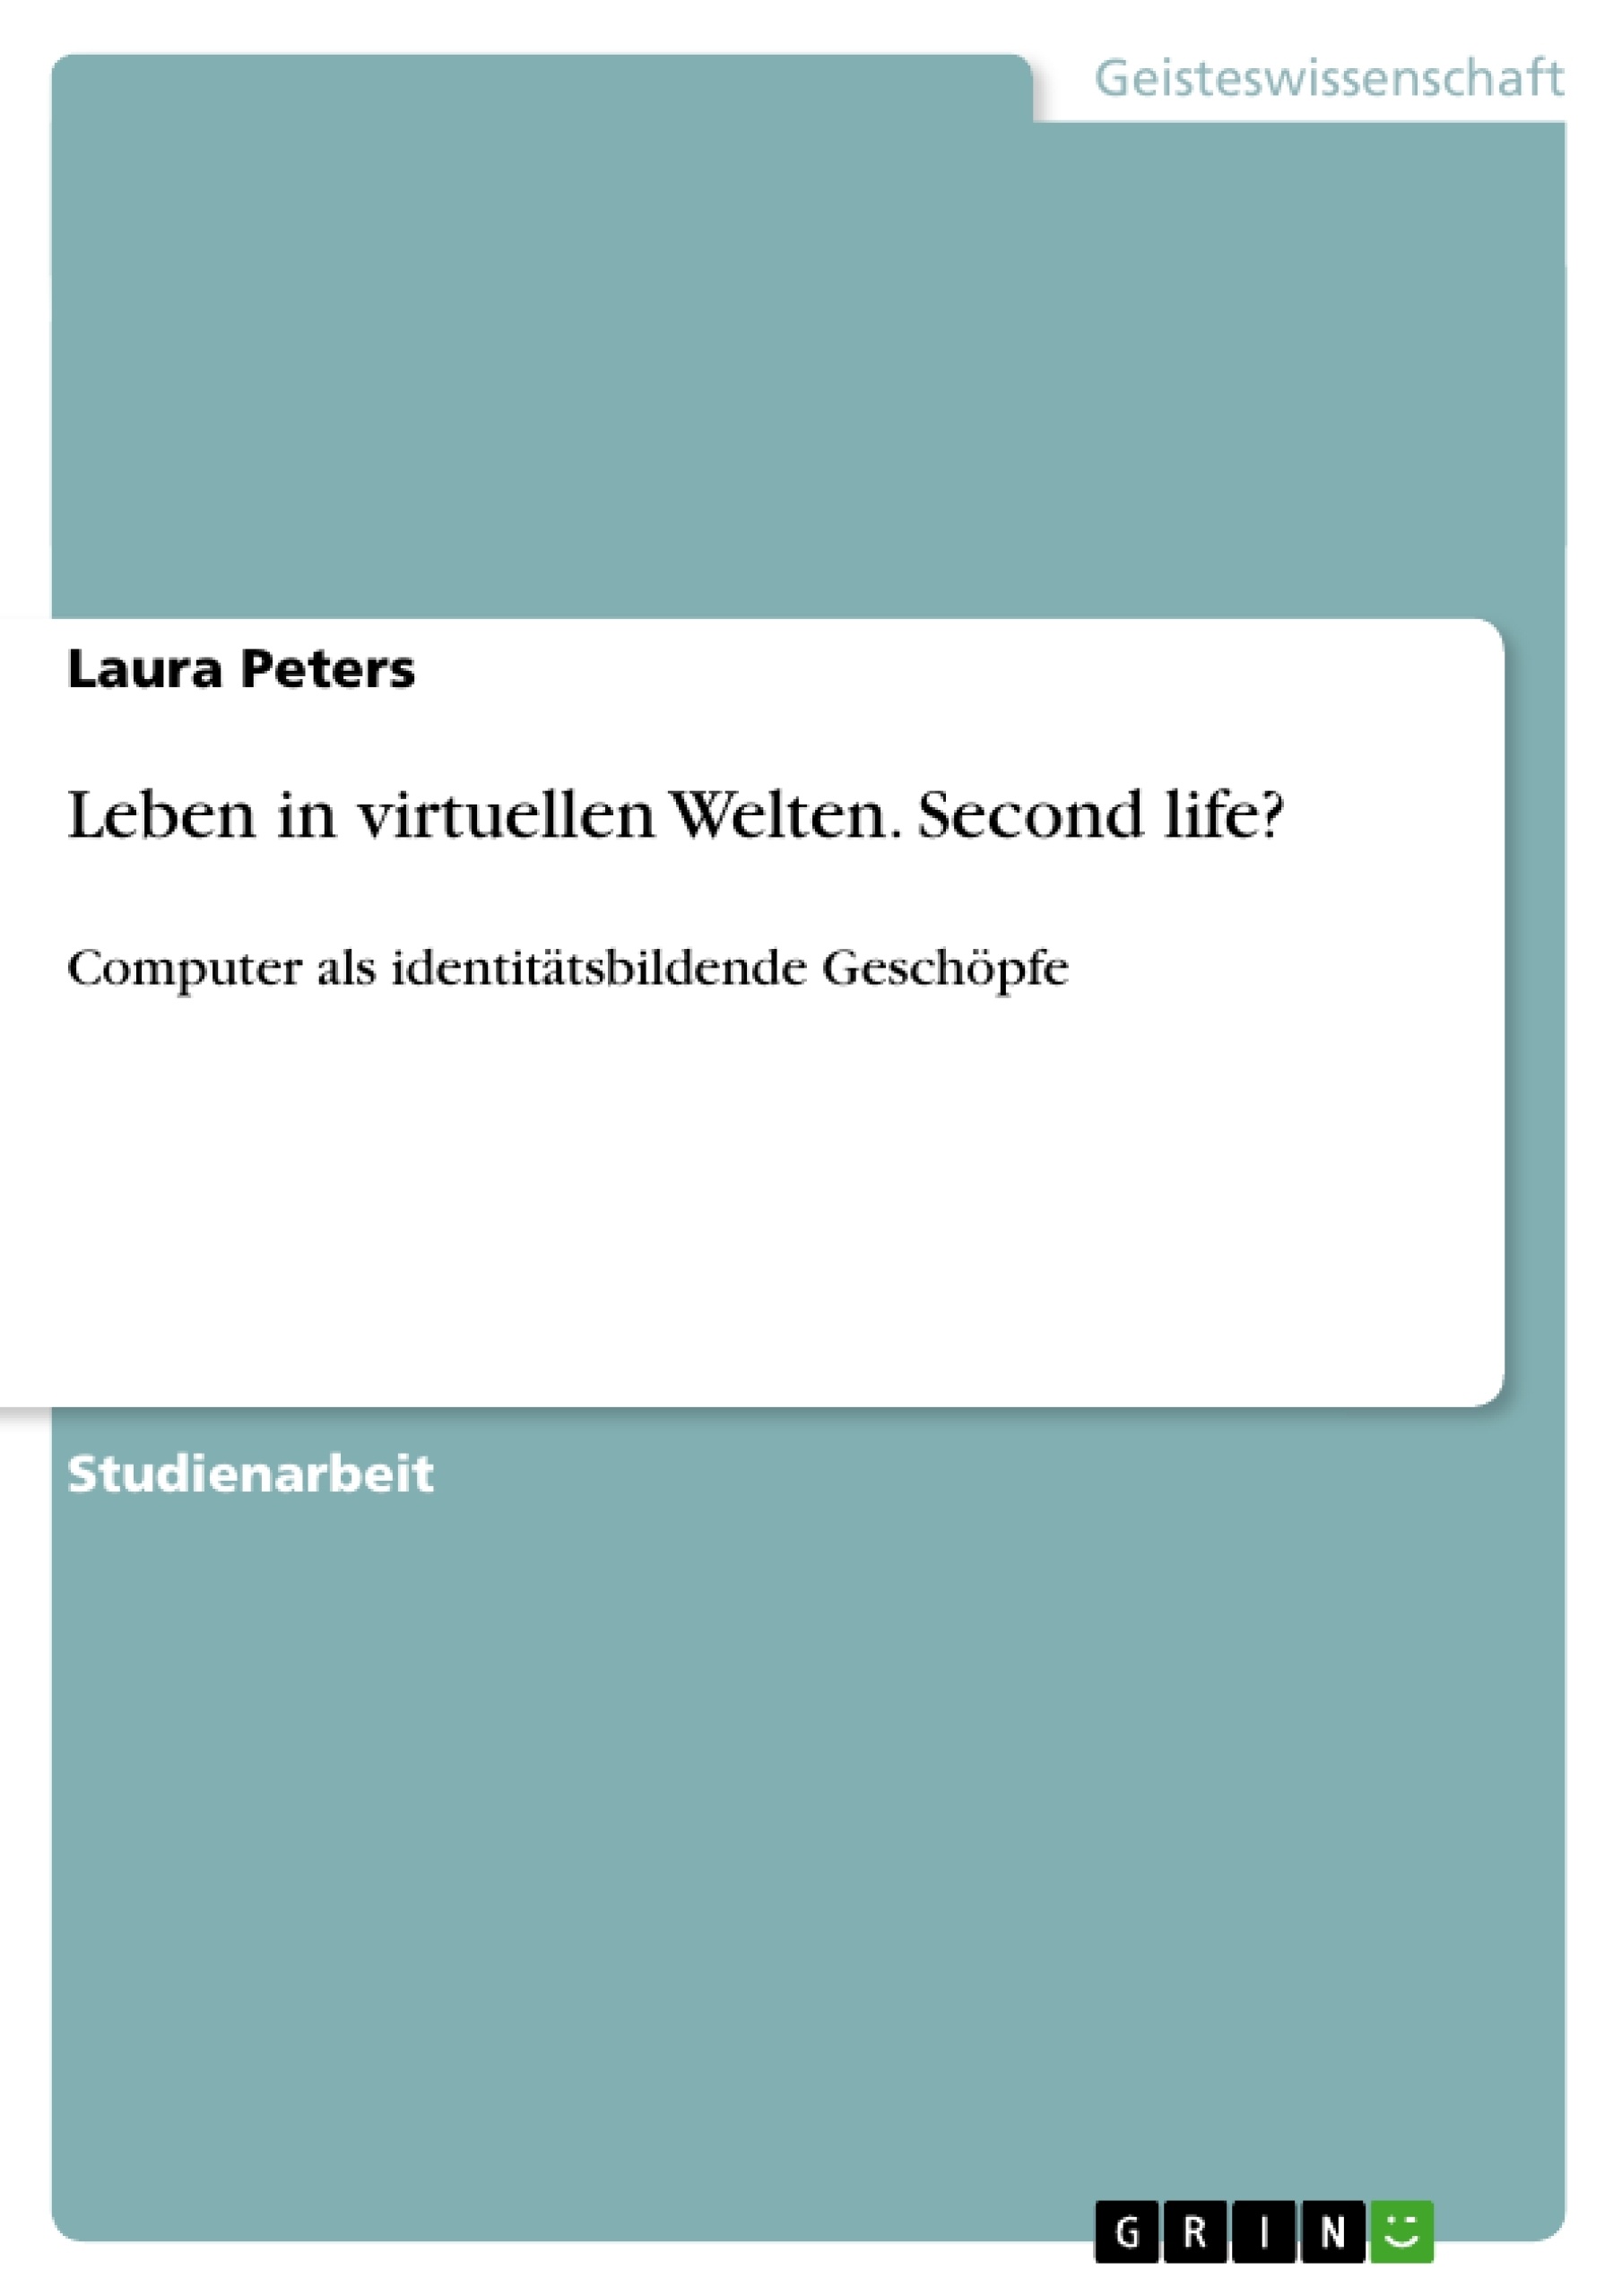 Title: Leben in virtuellen Welten. Second life?